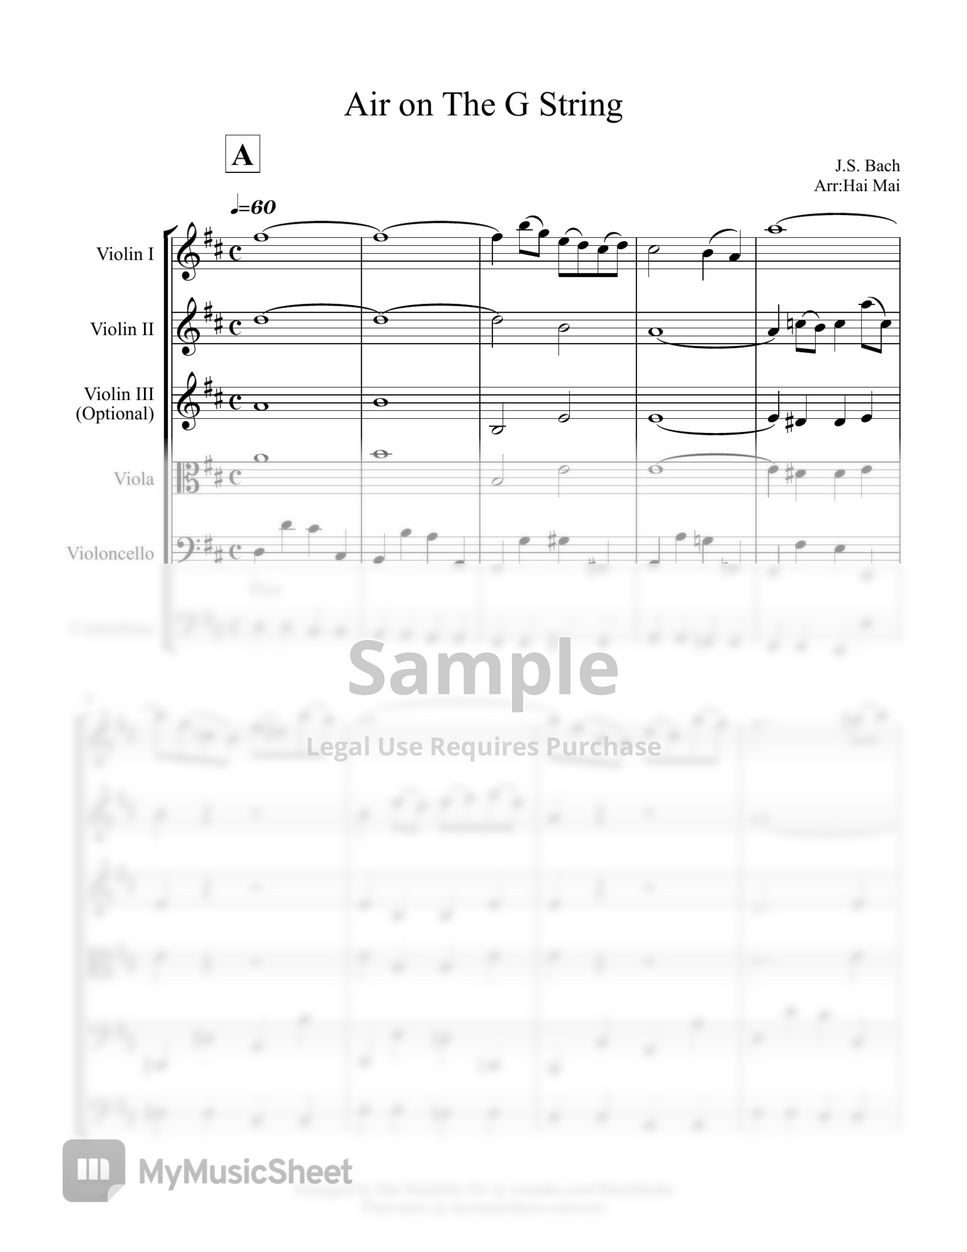 J.S Bach - Air on The G-String for String Ensemble by Hai Mai